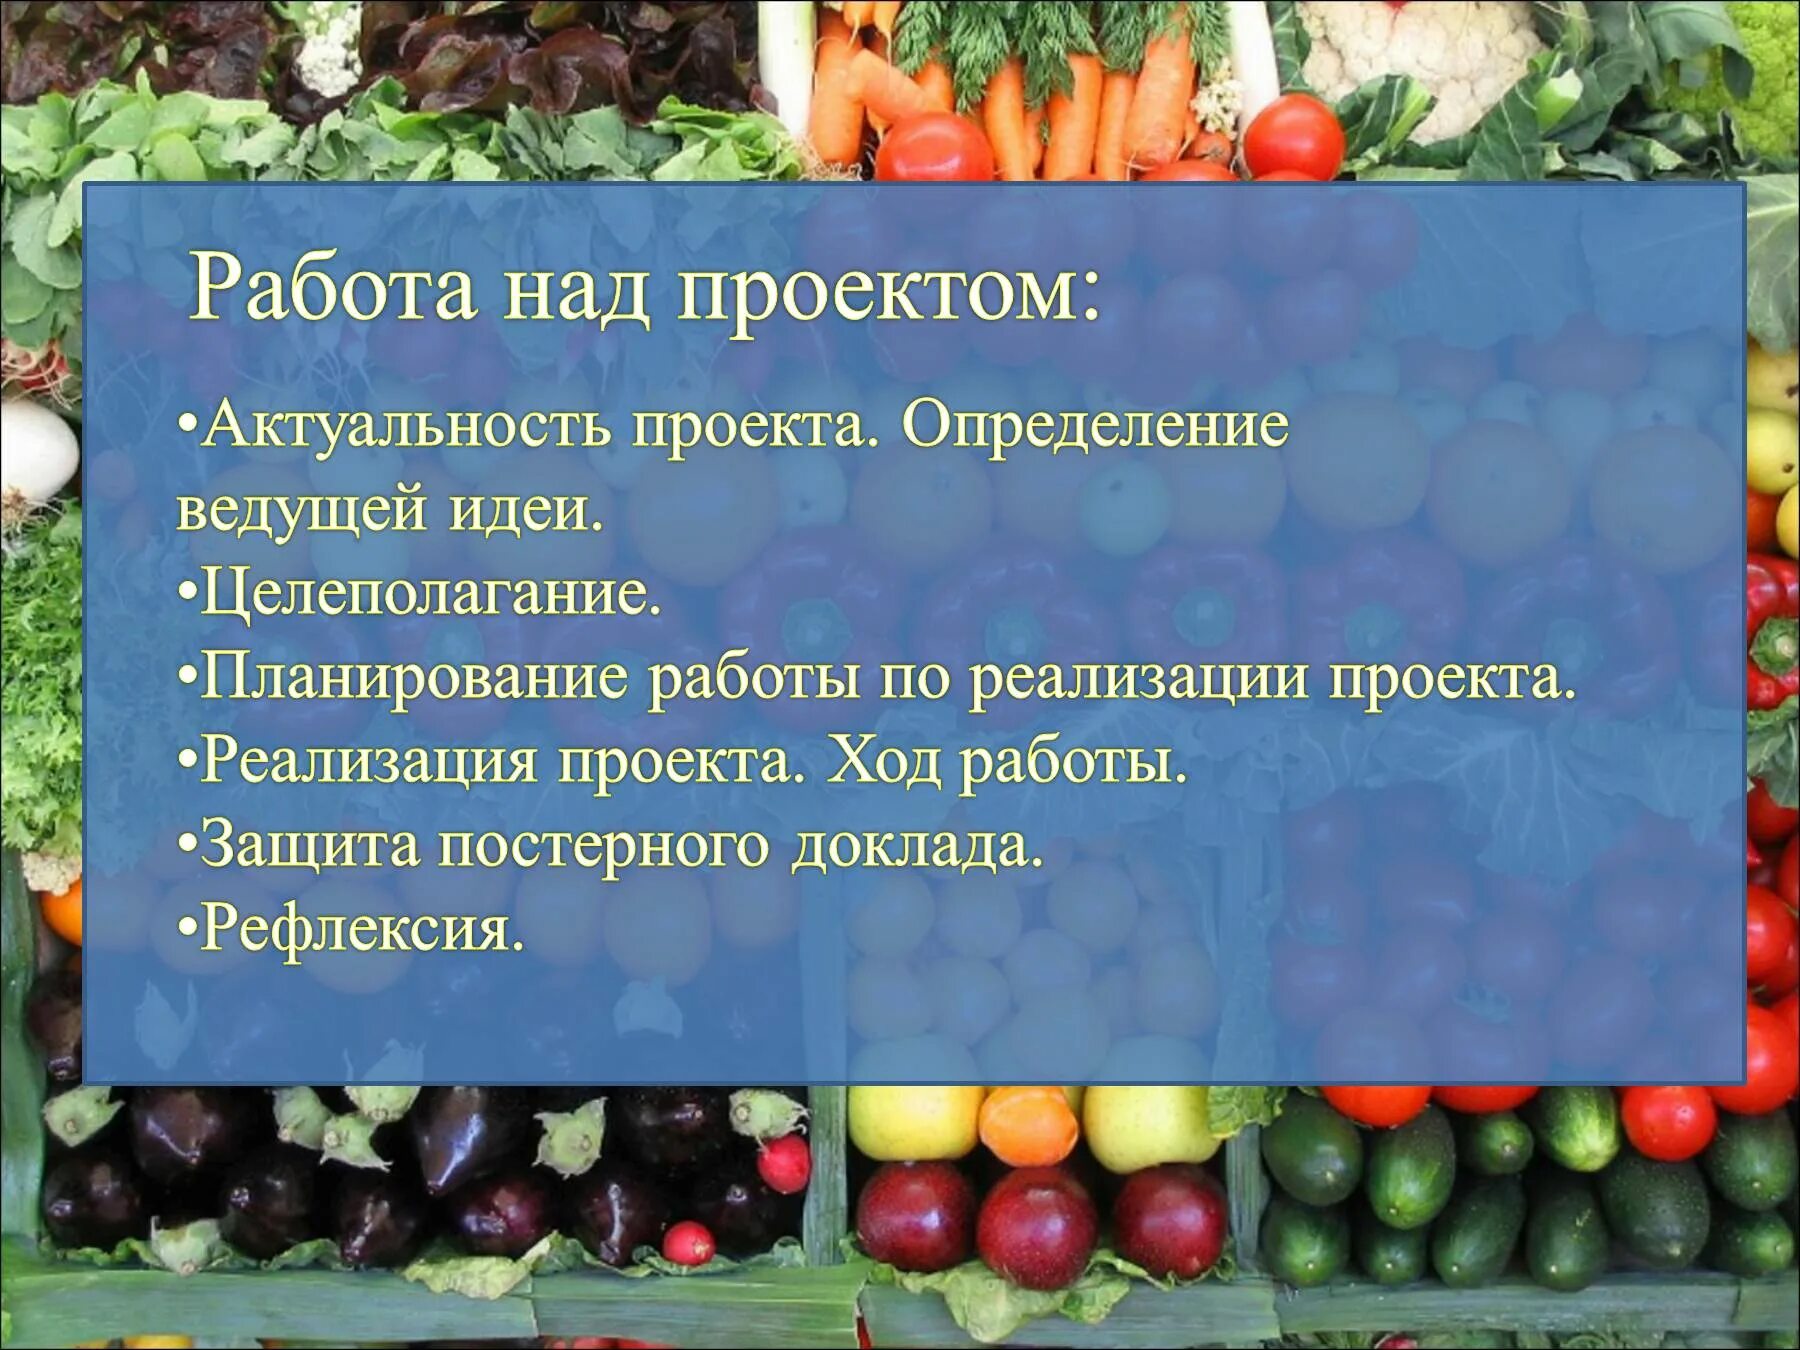 Нитраты в овощах и фруктах. Измерение нитратов в овощах. Проект нитраты в овощах и фруктах. Нитраты в овощах презентация. Определение нитратов в овощах